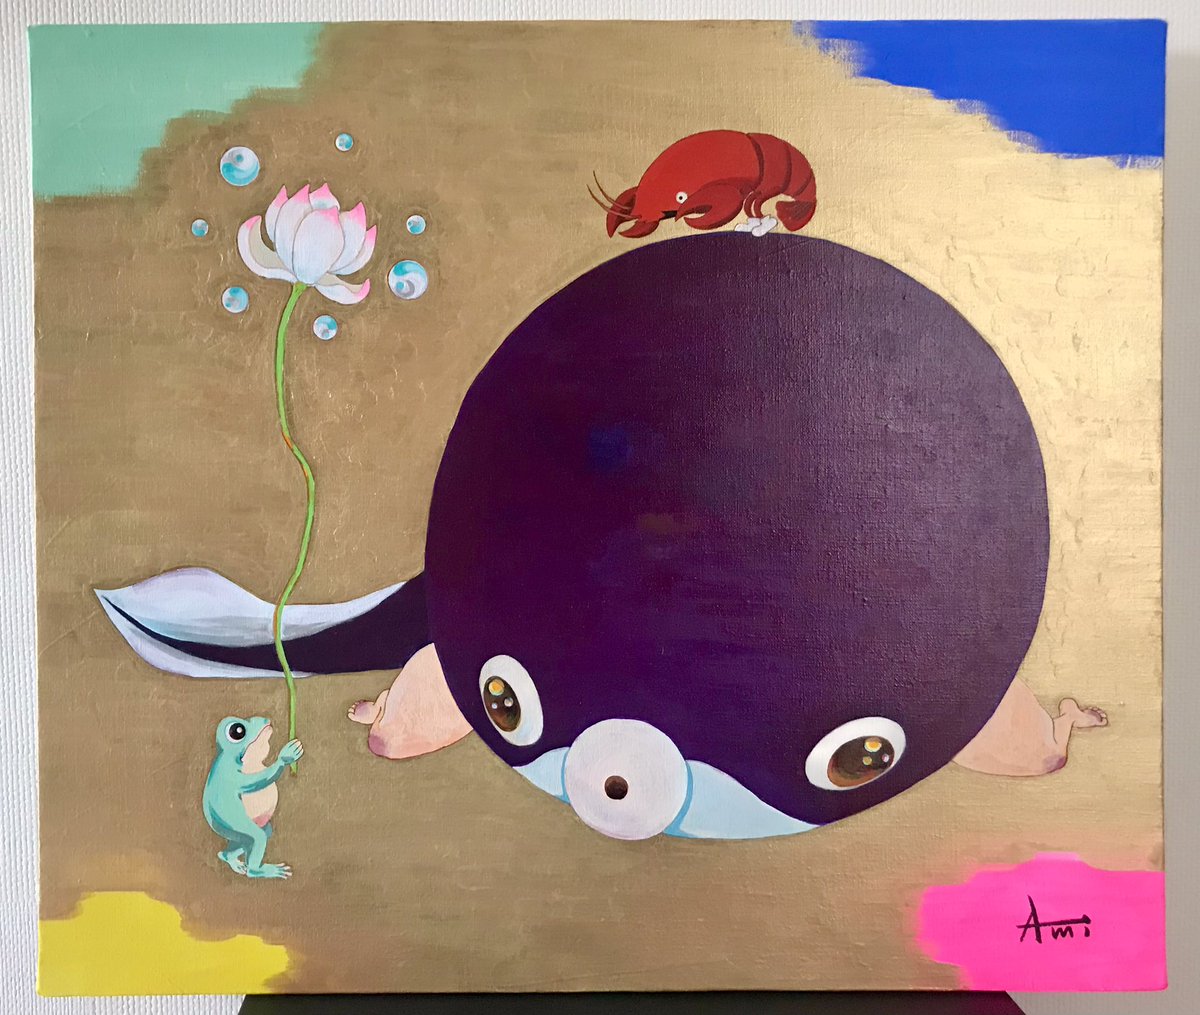 「ワタシの絵画には、さりげなくアメリカザリガニの薫ちゃんおりますよ。 柴田亜美#a」|柴田亜美staffのイラスト